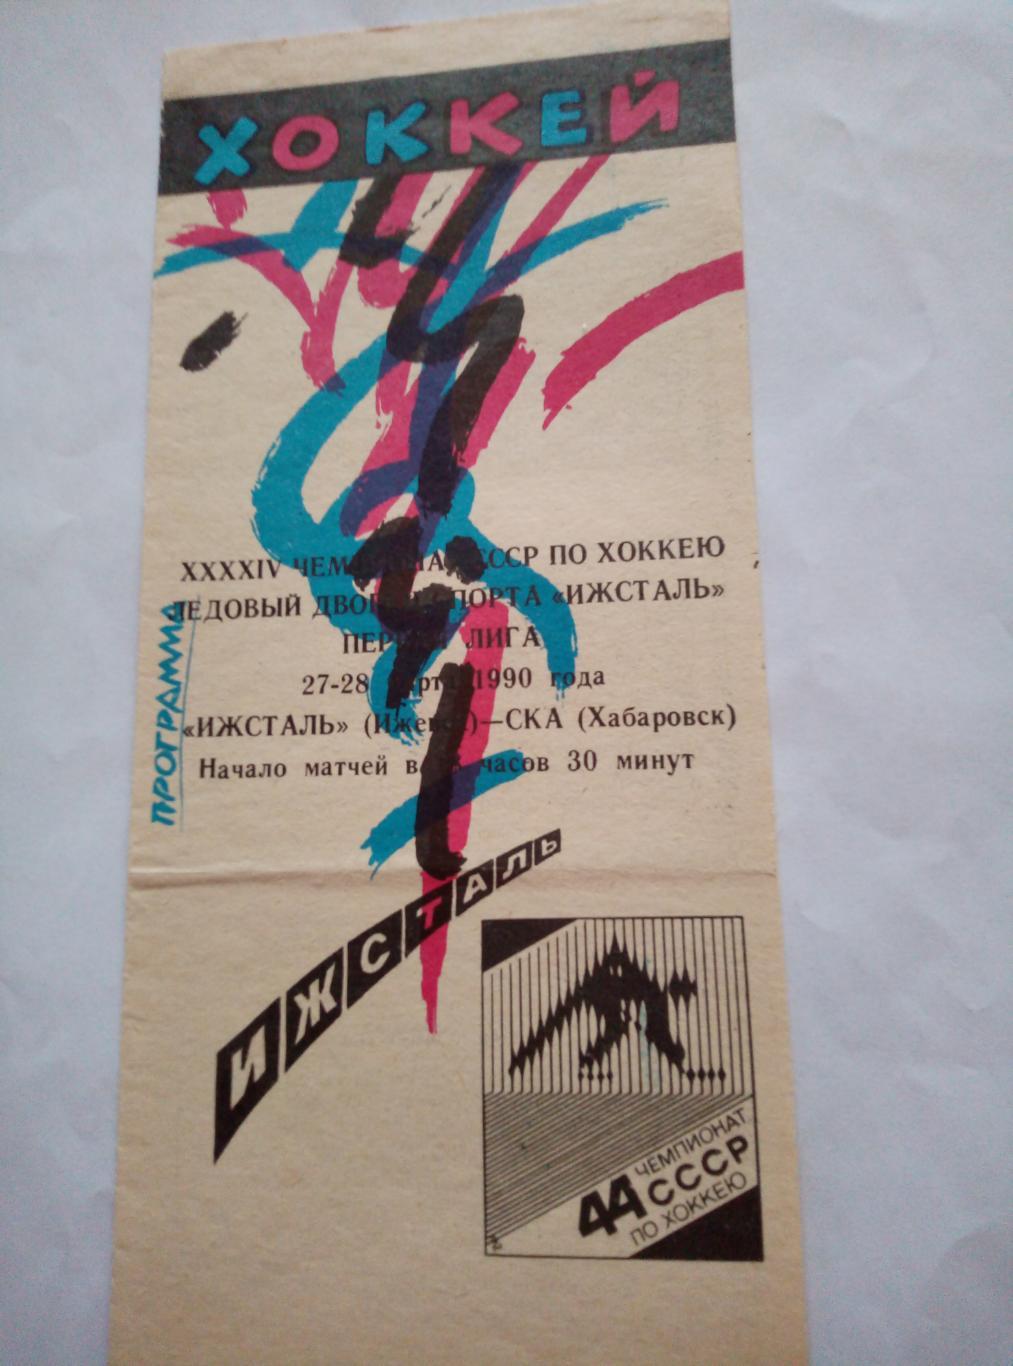 Ижсталь Ижевск - СКА Хабаровск - 27-29.03.1990